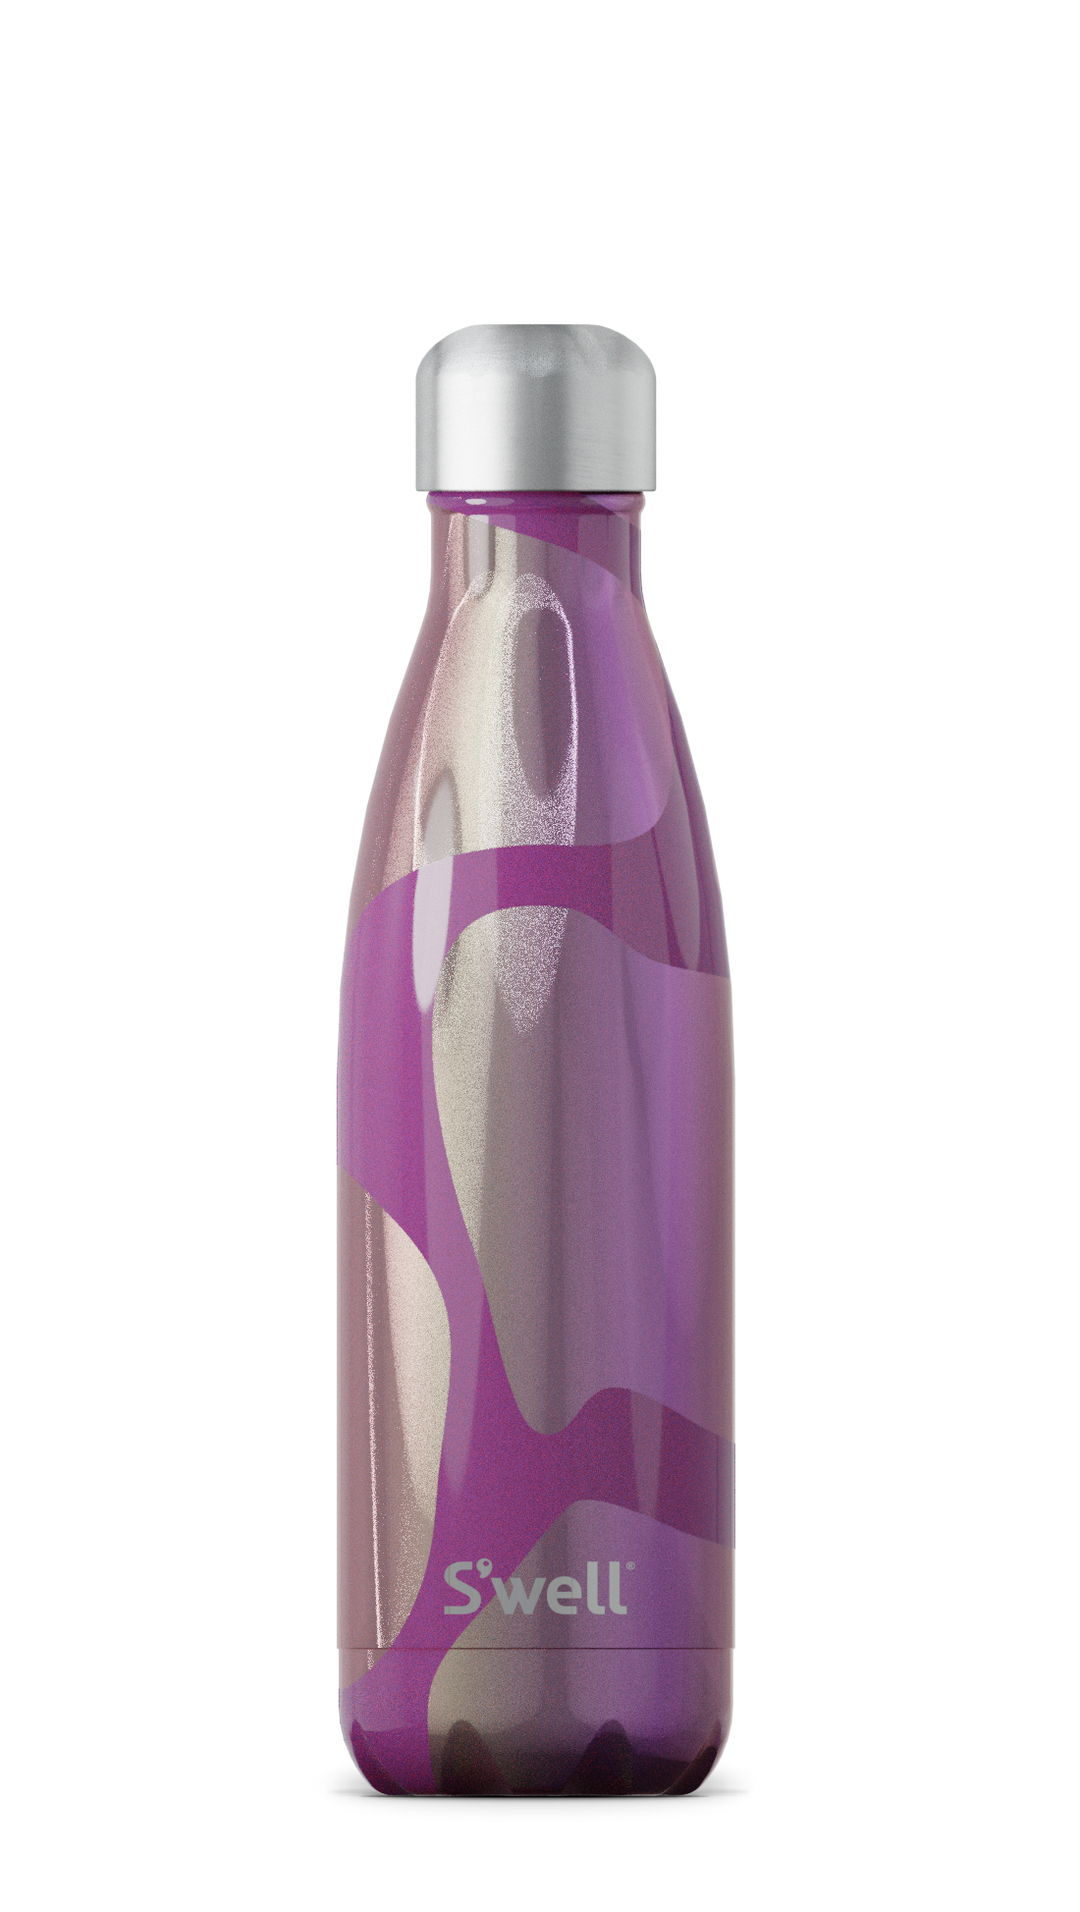 https://hautetotz.com/cdn/shop/products/17oz-holographic-aubergine-dream-bottle-cap-on.png?v=1632496694&width=1080